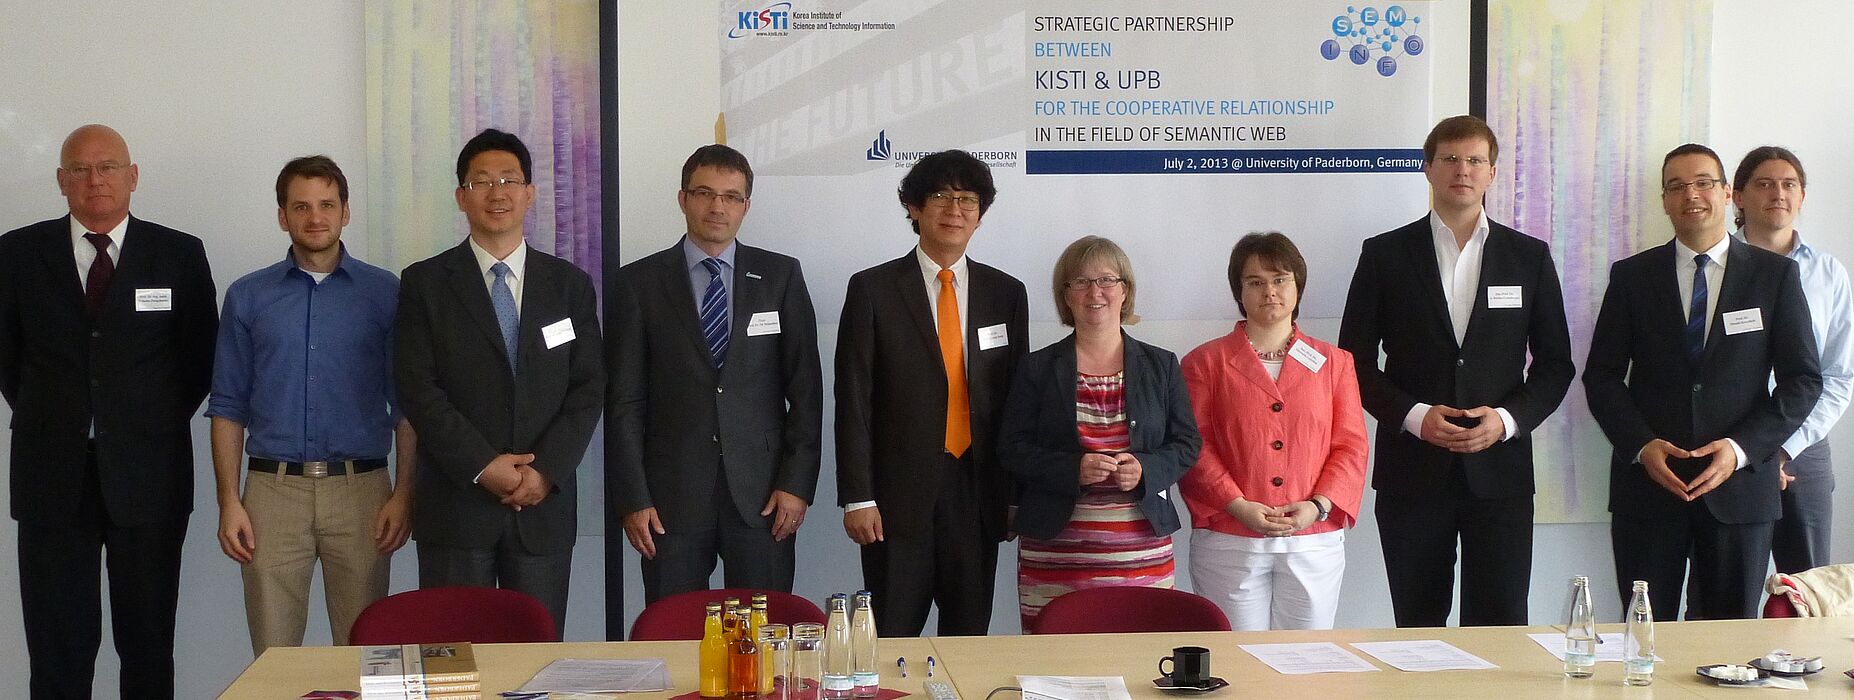 Foto (Universität Paderborn, Uwe Knaup): Prof. Dr. Won-Kyung Sung (5. v. l., KISTI), Prof. Dr. Hanmin Jung (3. v. l., KISTI) und Dr. Seungwoo Lee (o. Abb., KISTI) trafen sich mit der Vizepräsidentin Simone Probst (5. v. r.) sowie Vertretern der Fakultä